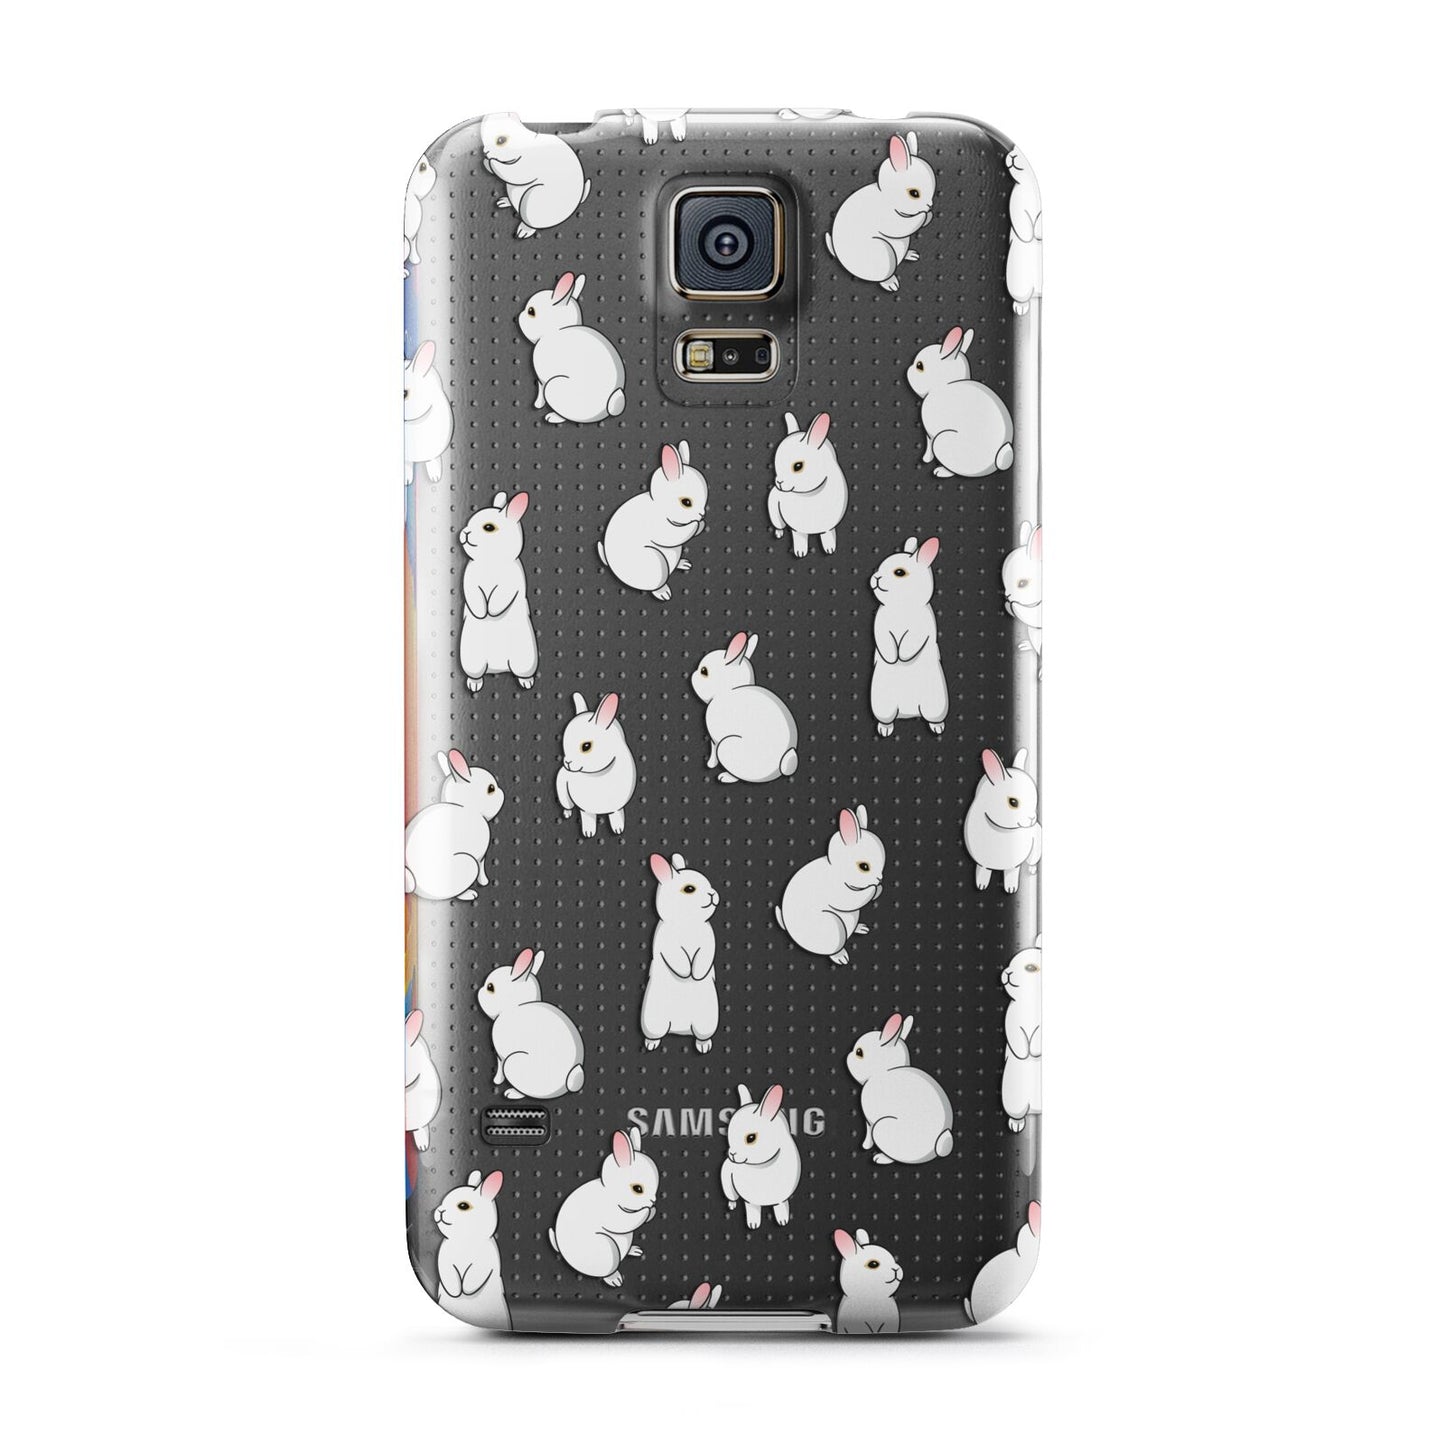 Bunny Rabbit Samsung Galaxy S5 Case